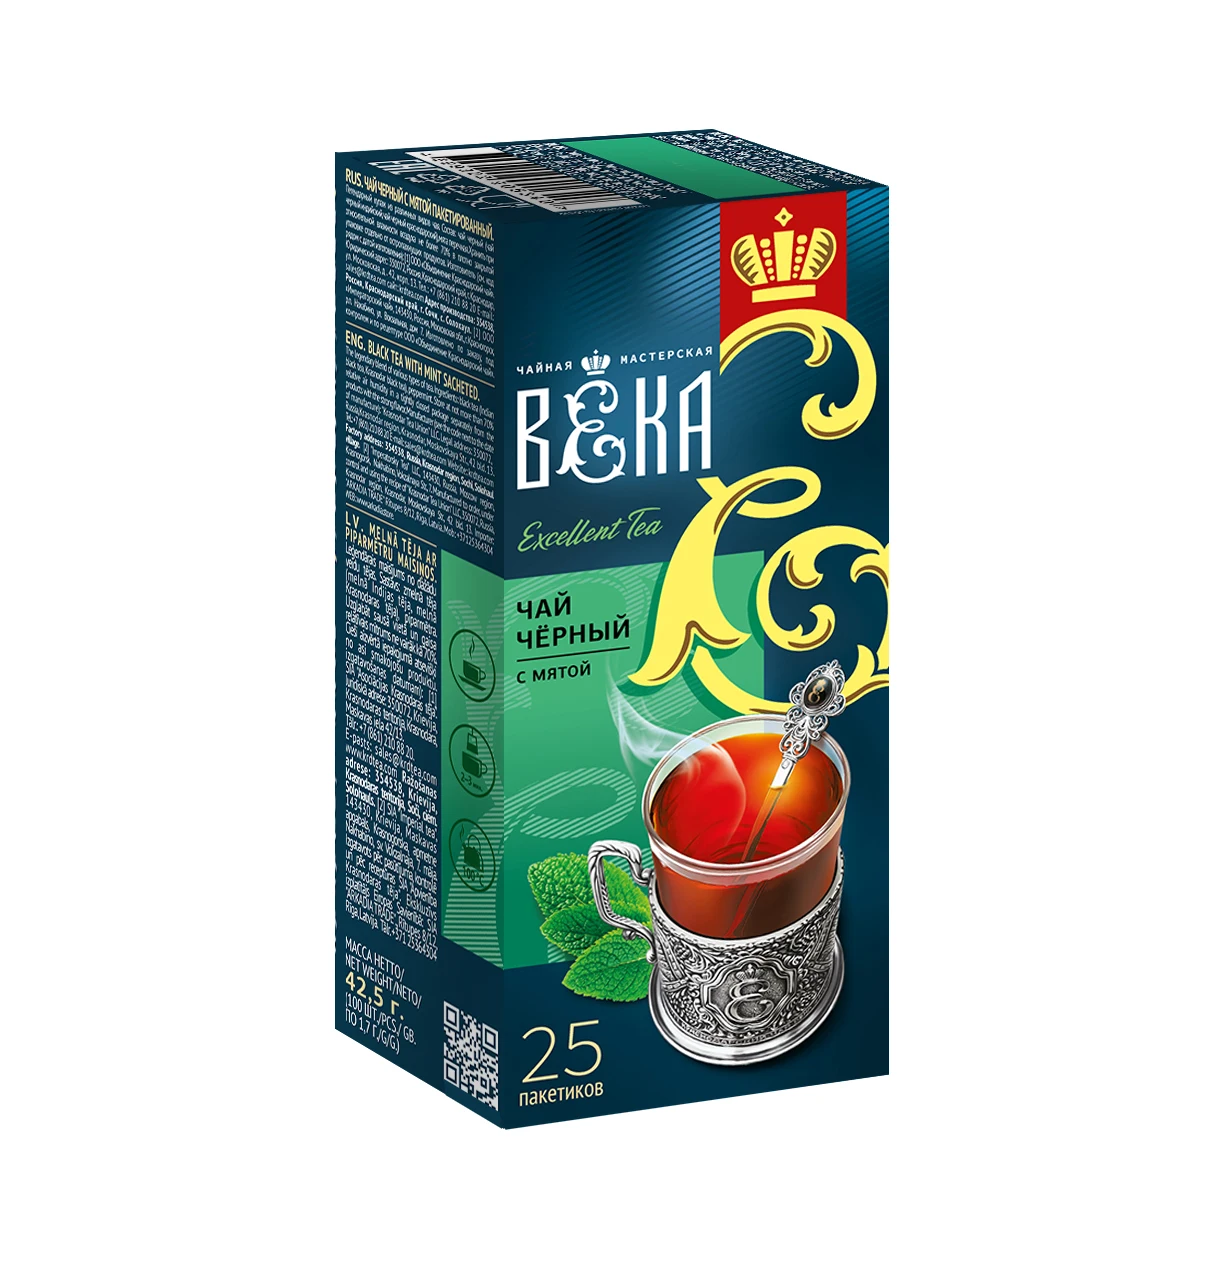 Черный чай с мятой, Краснодарский чай BEKA, 25 шт. Оптовая продажа от производителя